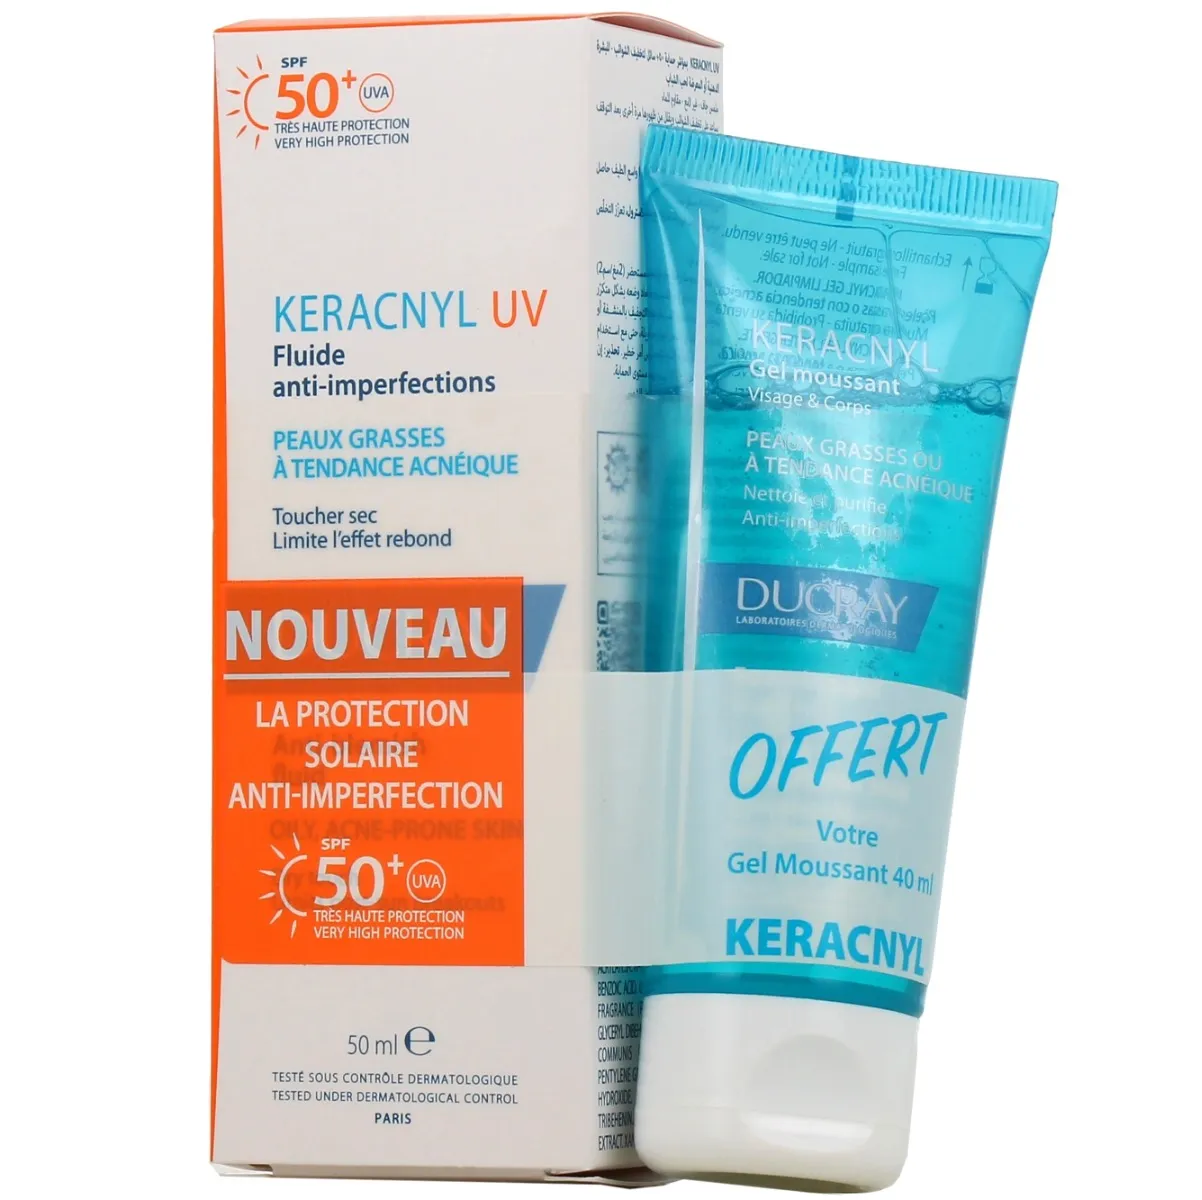 keracnyl-uv-fluide-anti-imperfections-spf50-gel-offert